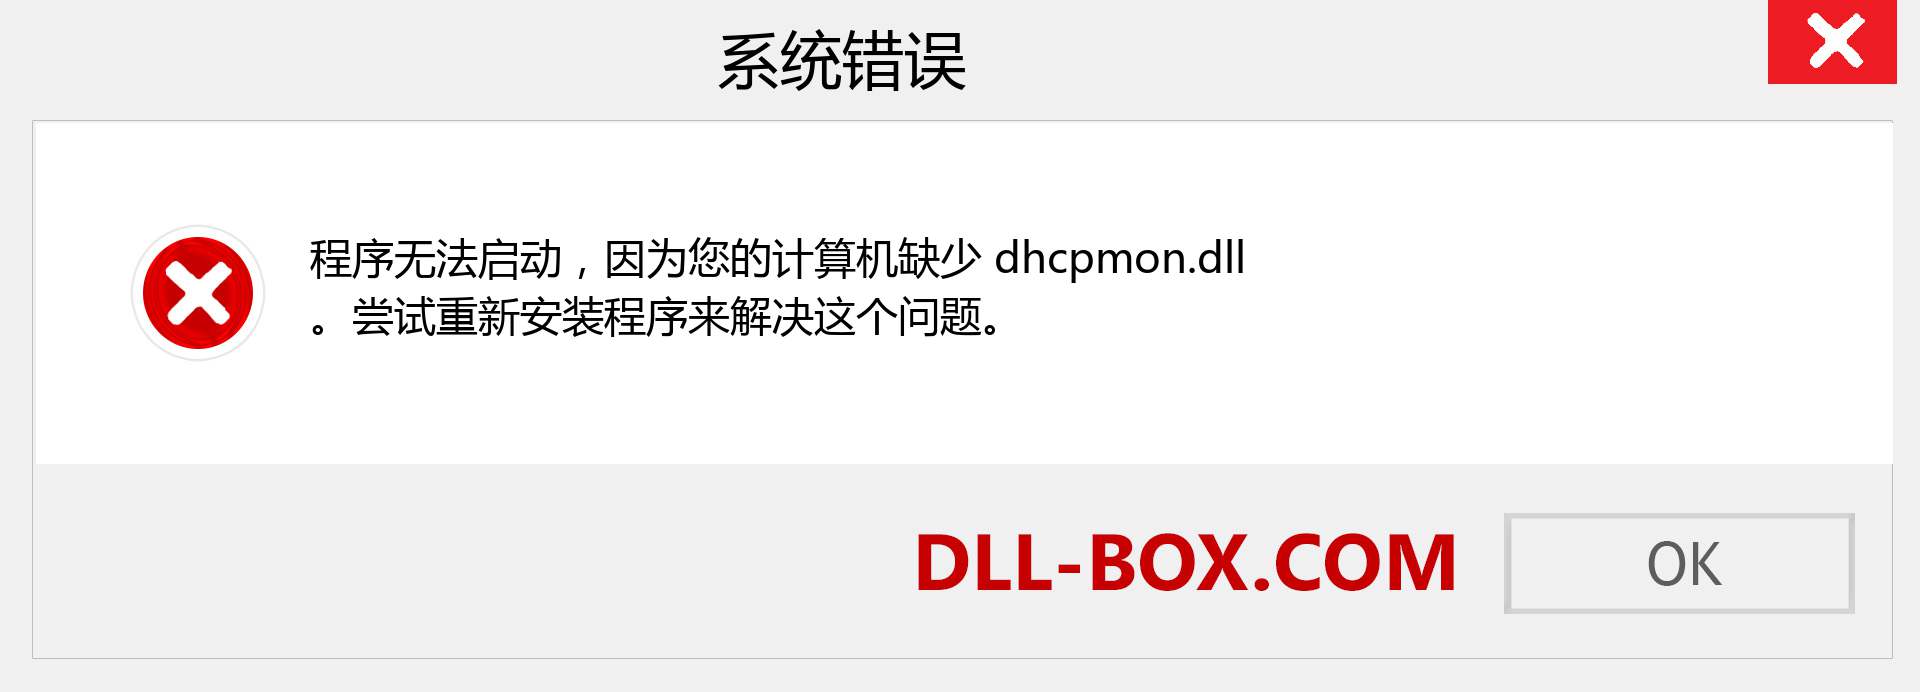 dhcpmon.dll 文件丢失？。 适用于 Windows 7、8、10 的下载 - 修复 Windows、照片、图像上的 dhcpmon dll 丢失错误